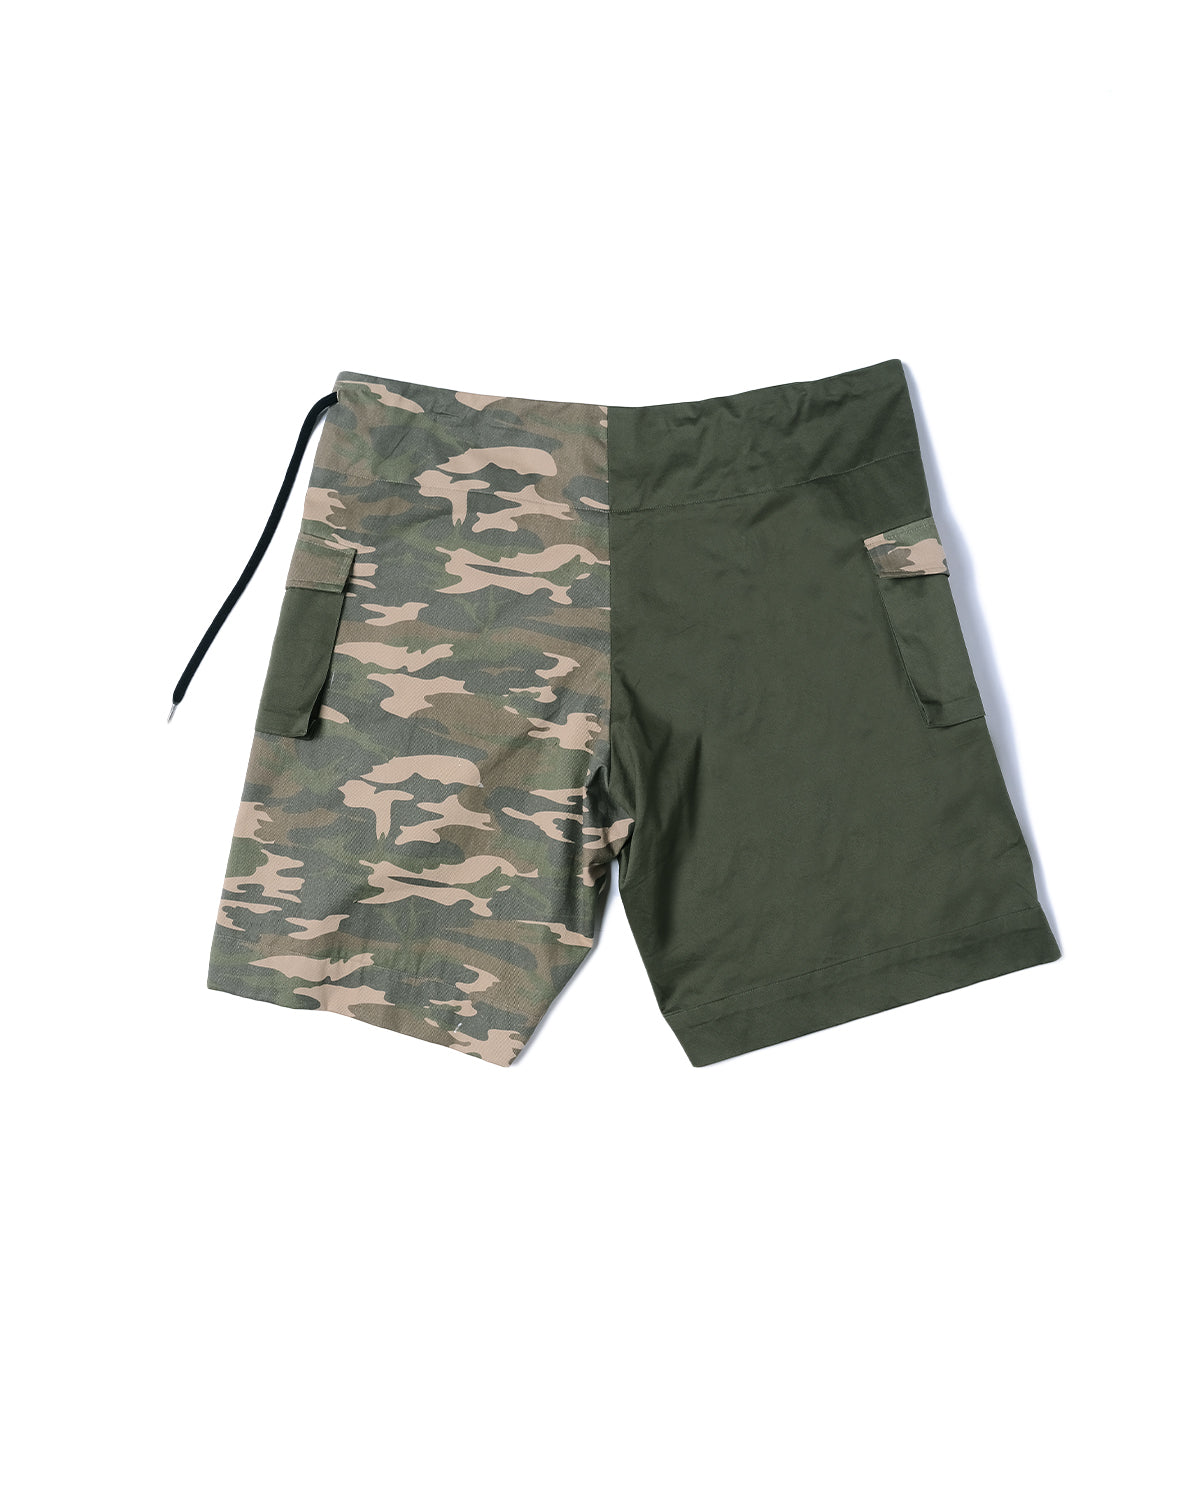 Camo Mix Army Green Pangolin Adjustable Pants